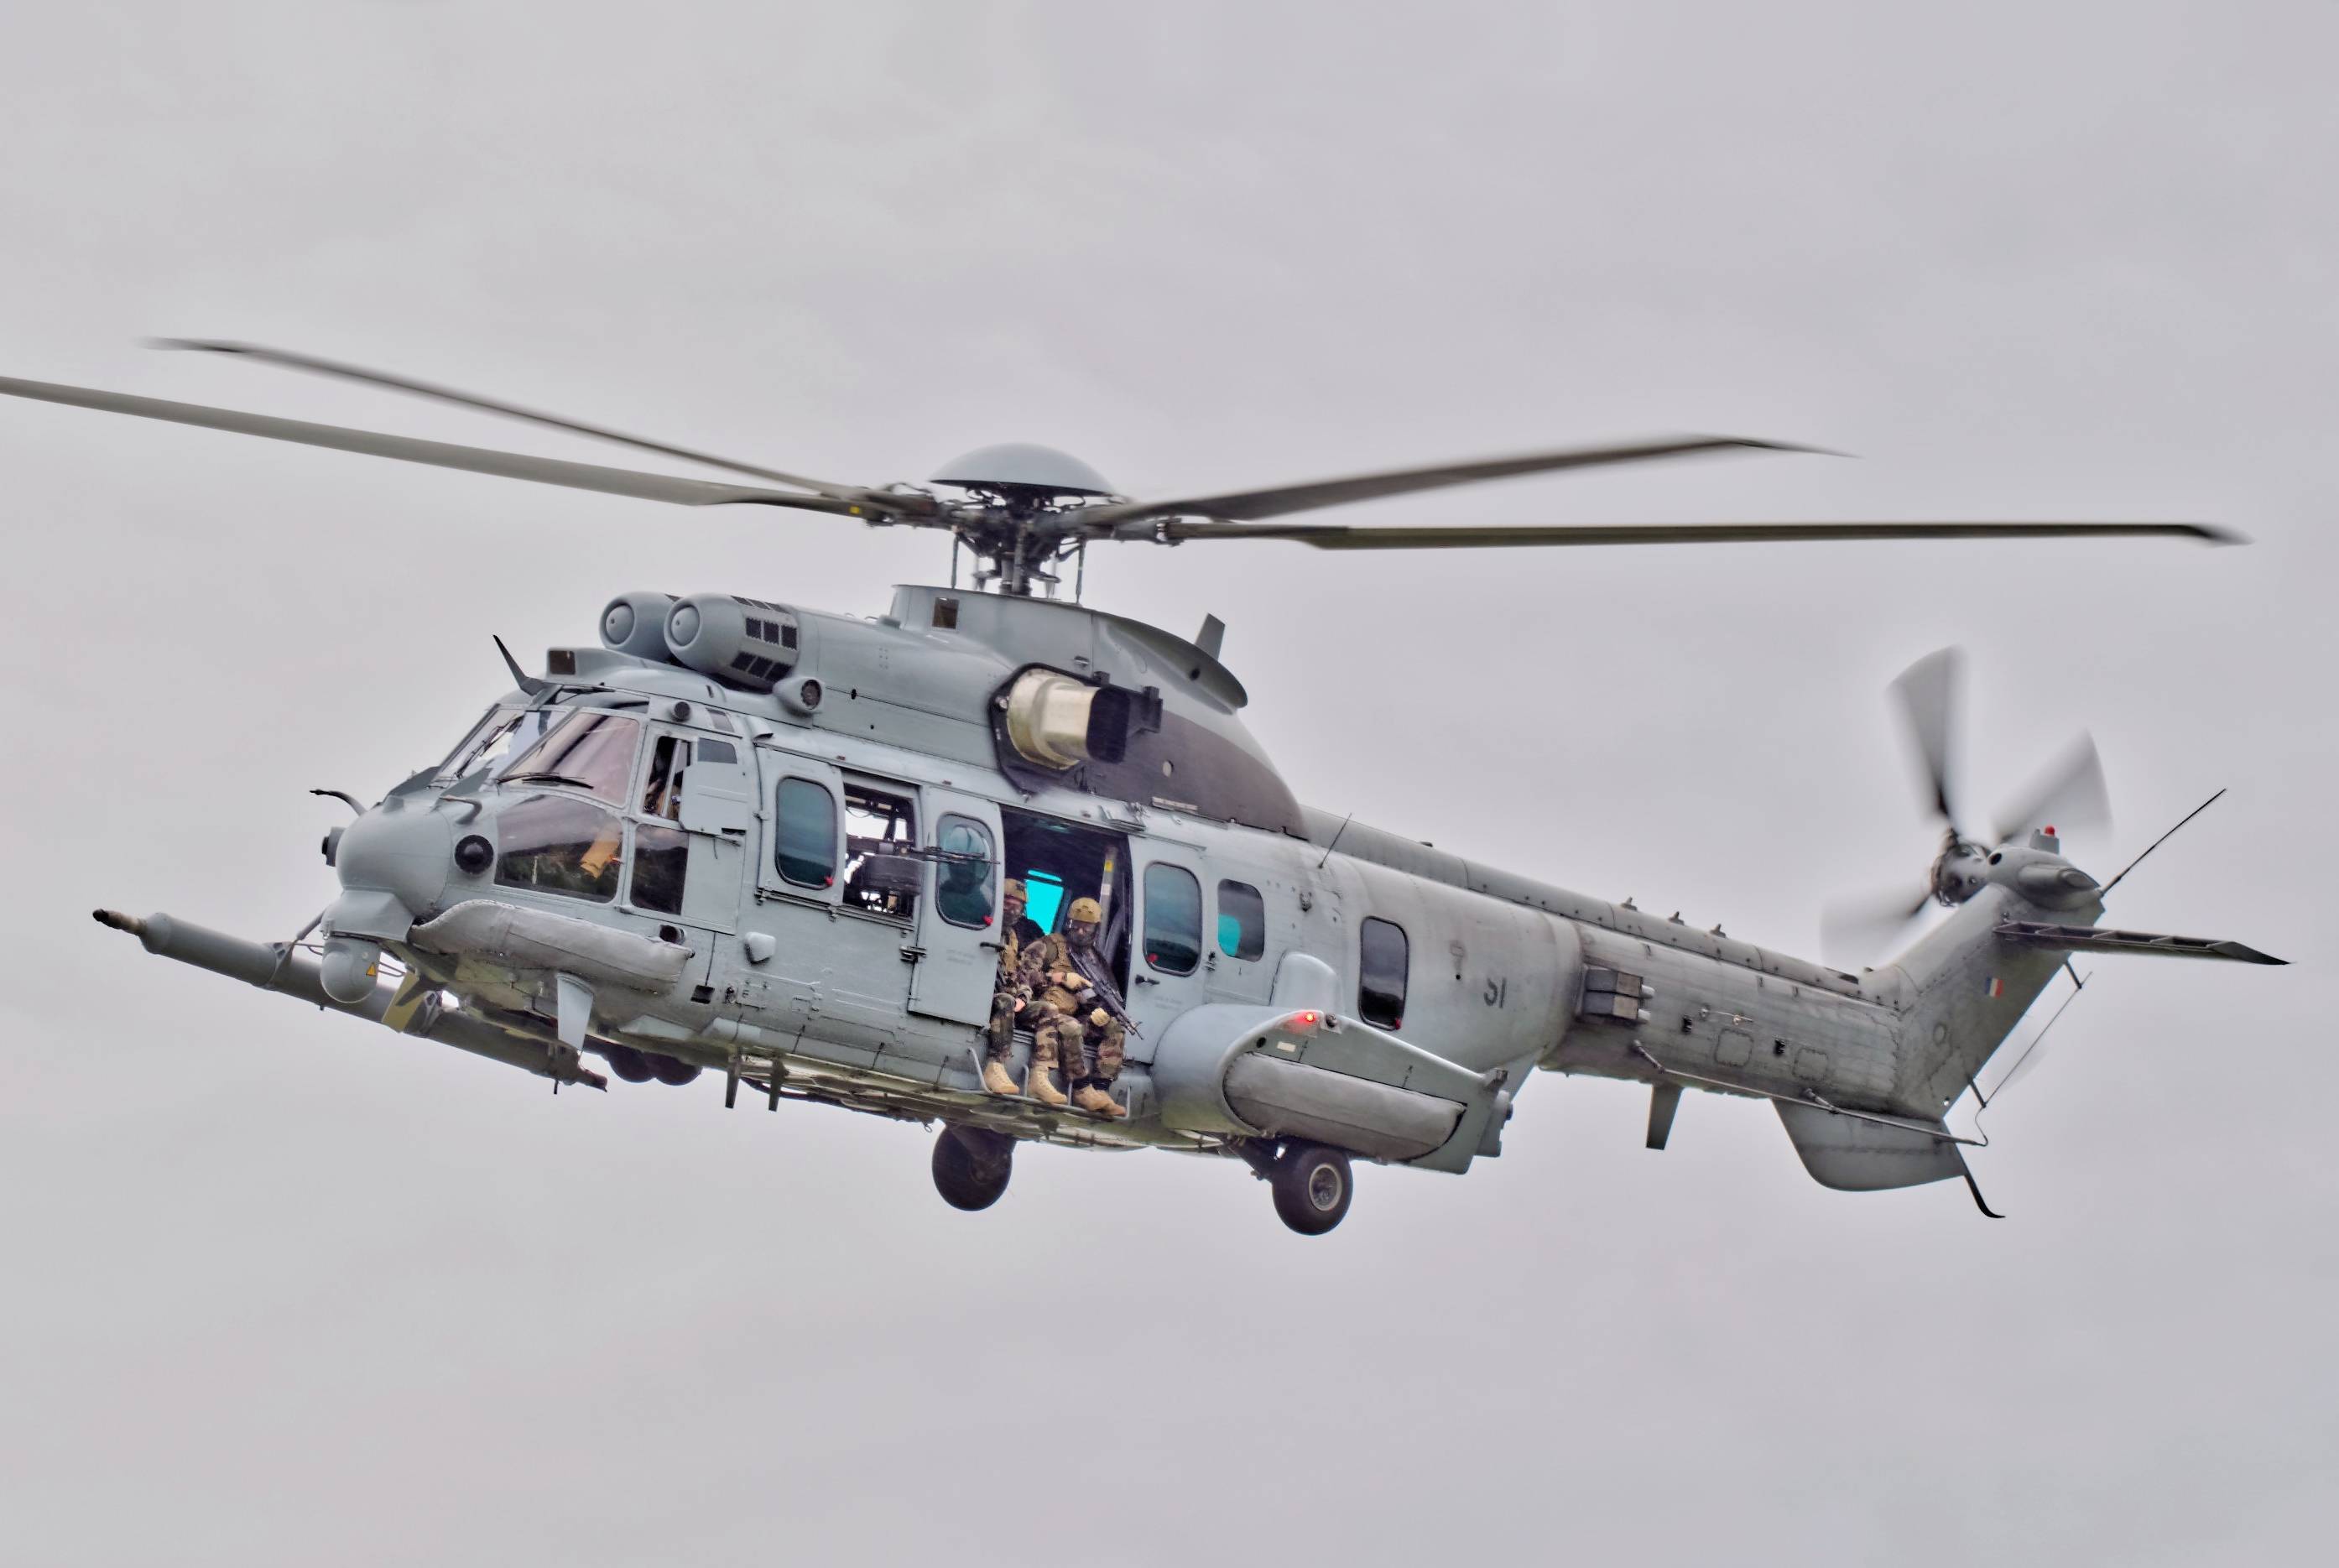 原创法国空军又订购8架直升机,可以空中加油,在敌后营救本国飞行员